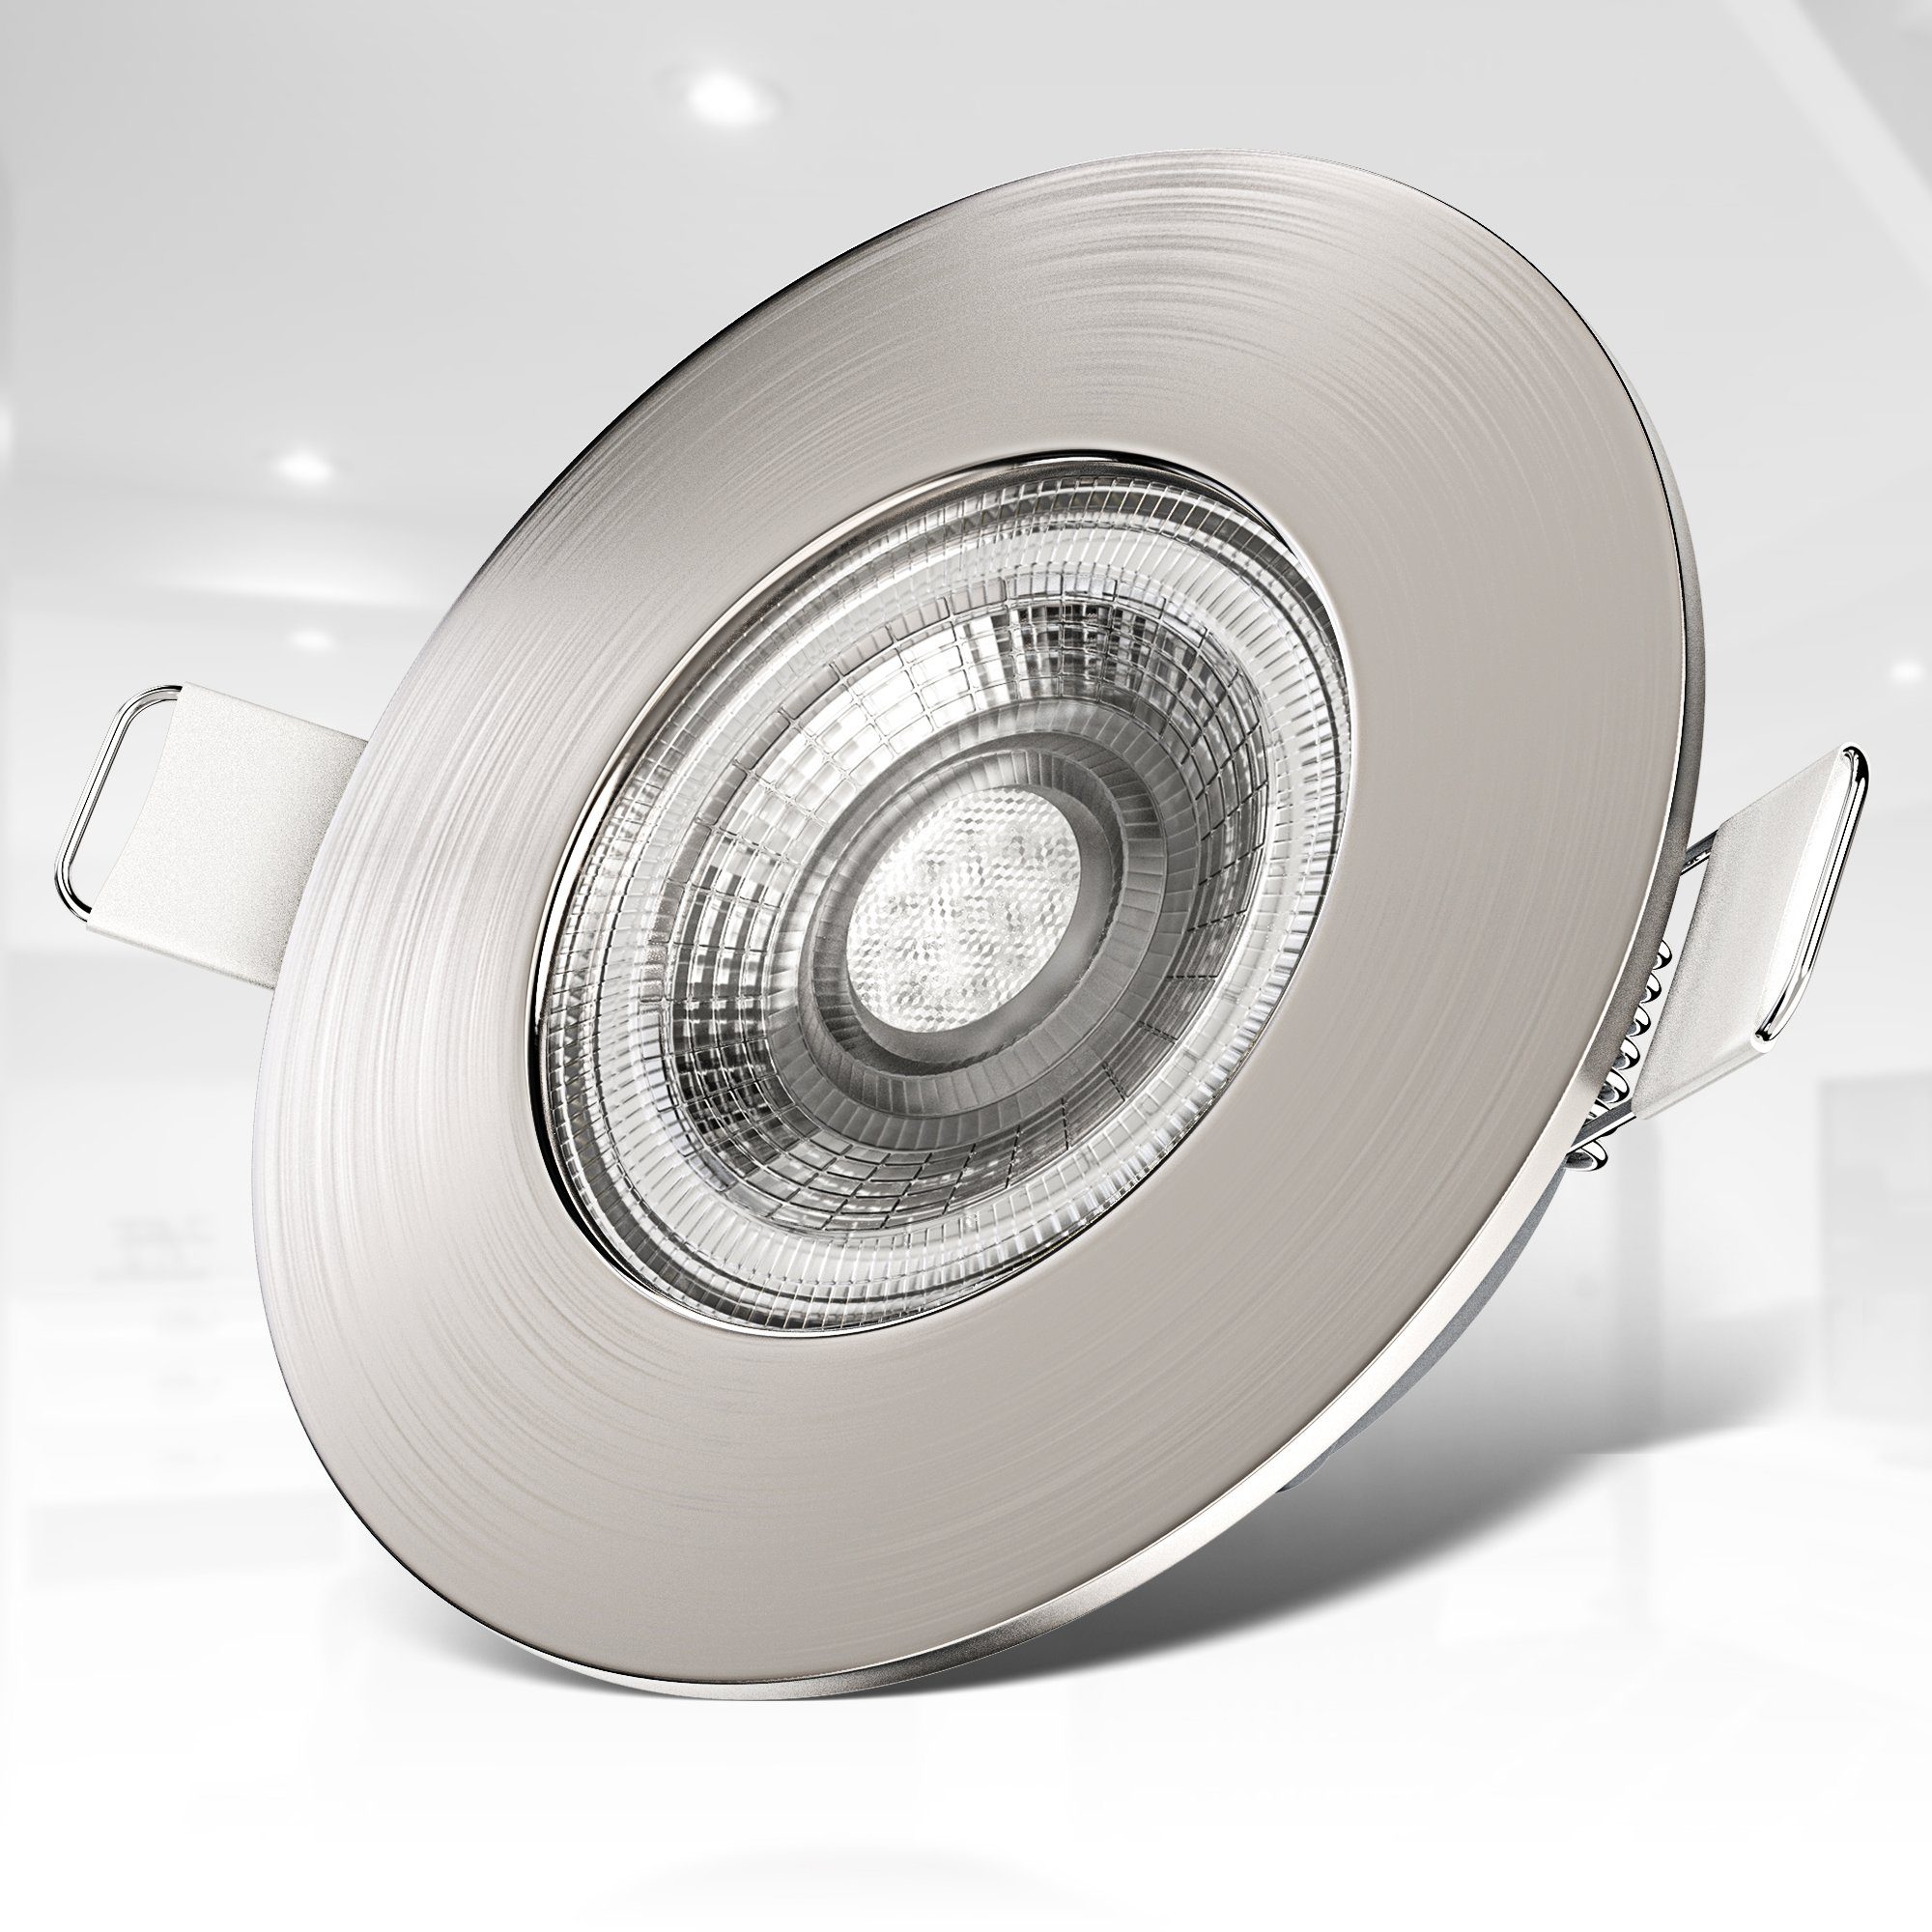 B.K.Licht LED LED inkl. 6er integriert, IP44, Einbauleuchte, 5W, flach, dimmbar, Warmweiß, fest Einbauleuchte, Einbauspots, SET